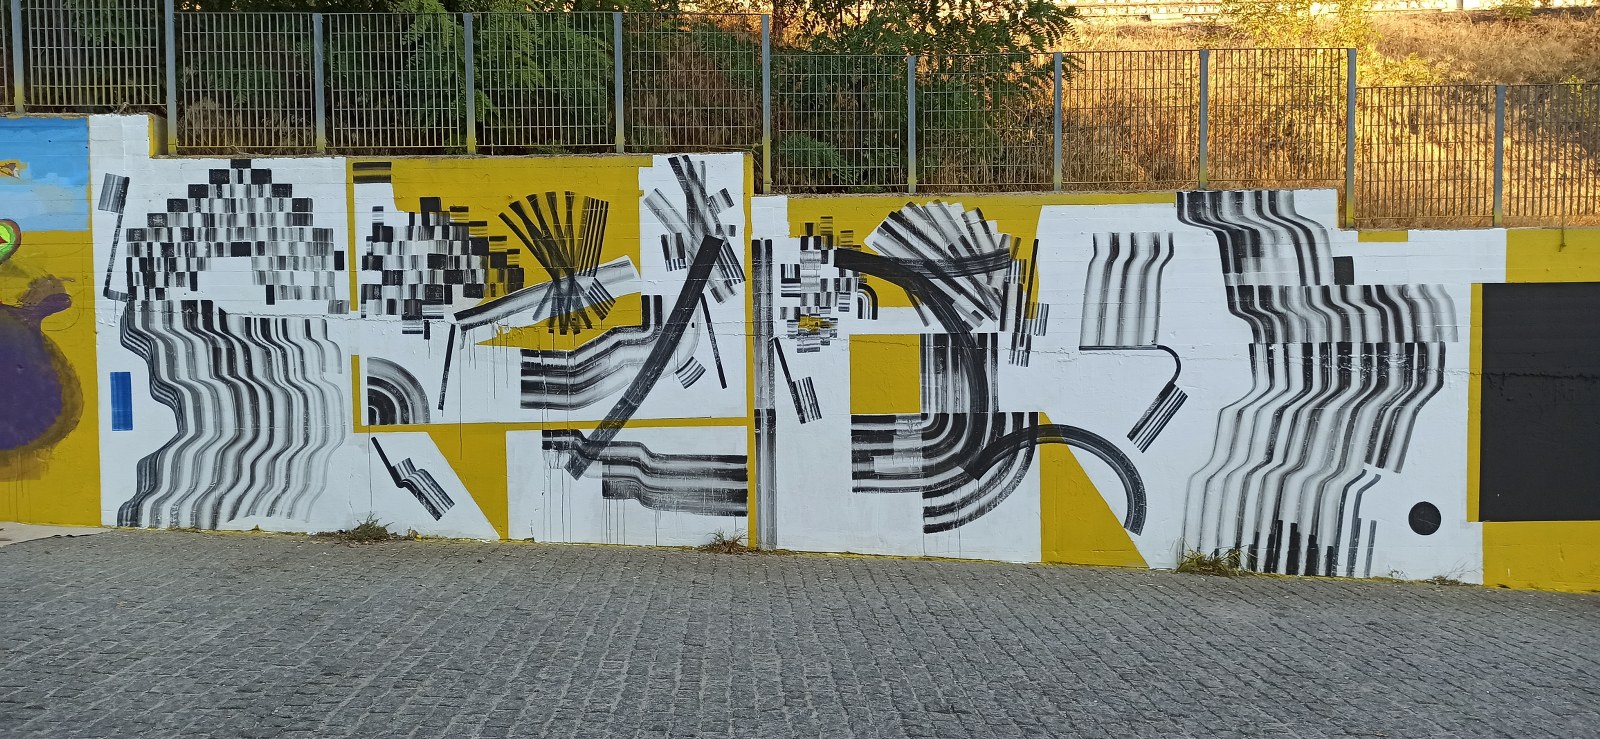 Street art πεζόδρομος οδού Θεσσαλονίκης